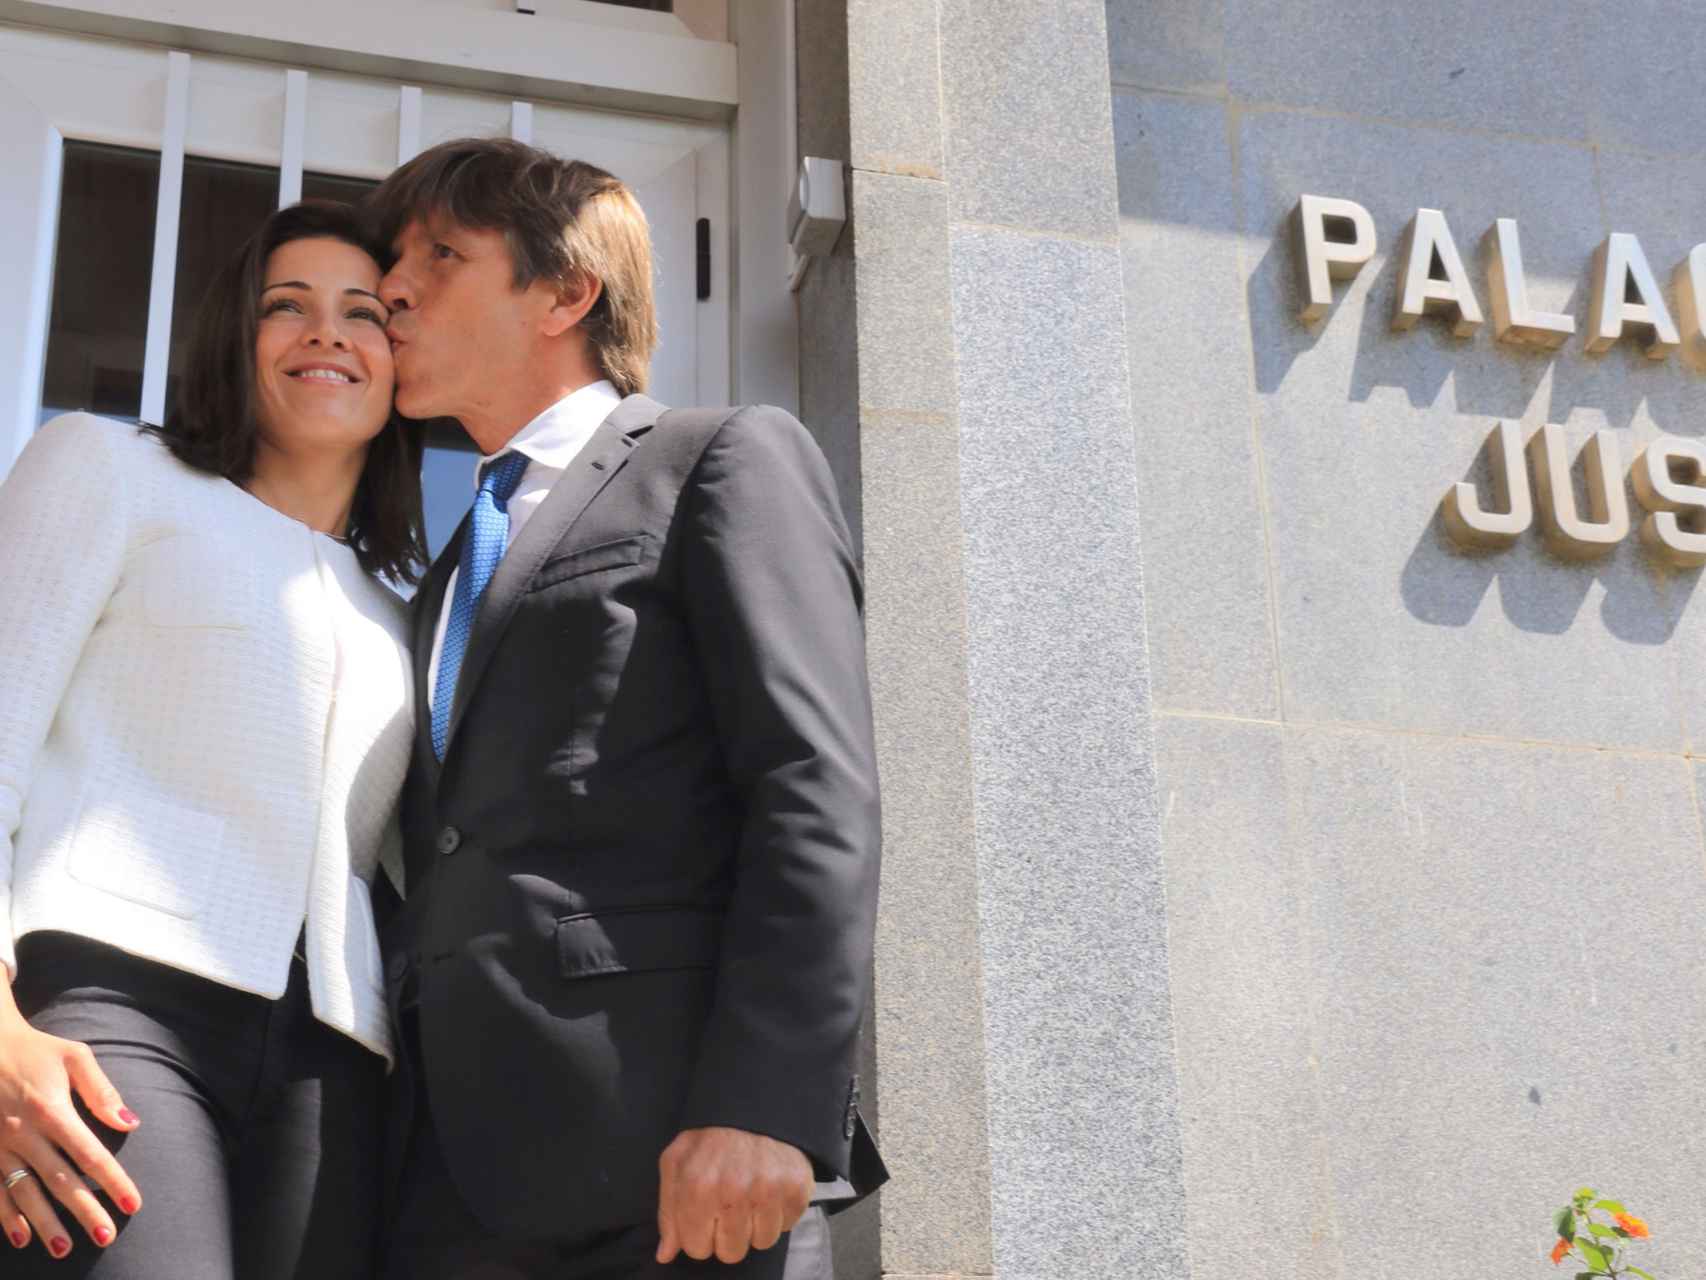 Manuel Díaz y su mujer Virginia Troconis felices a la salida del juzgado